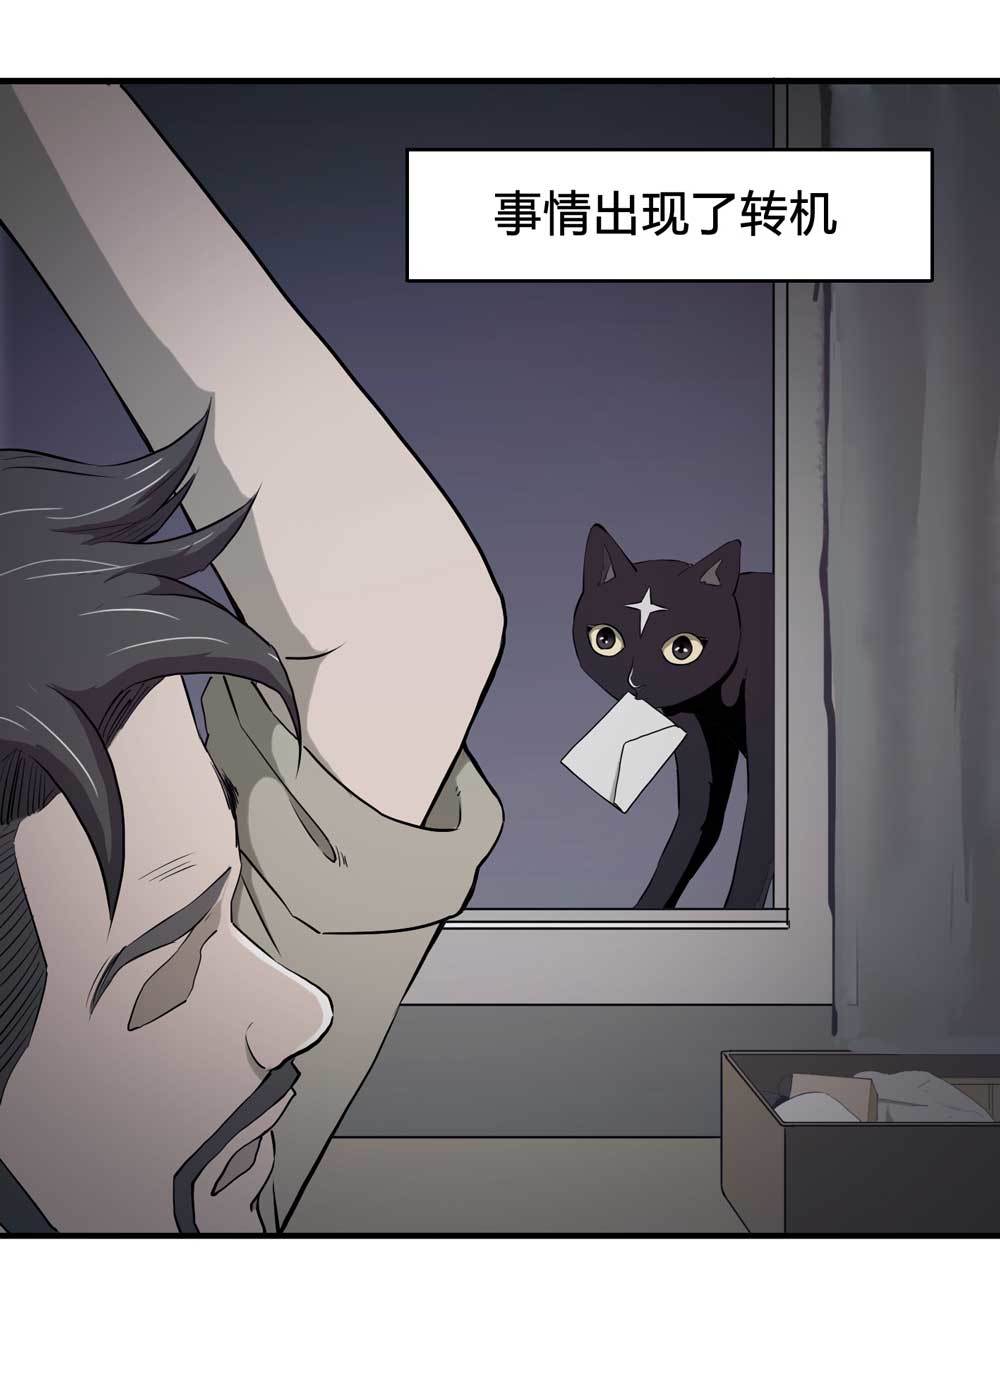 悬疑猫——大叔深夜故事集 - 000-序篇 - 2